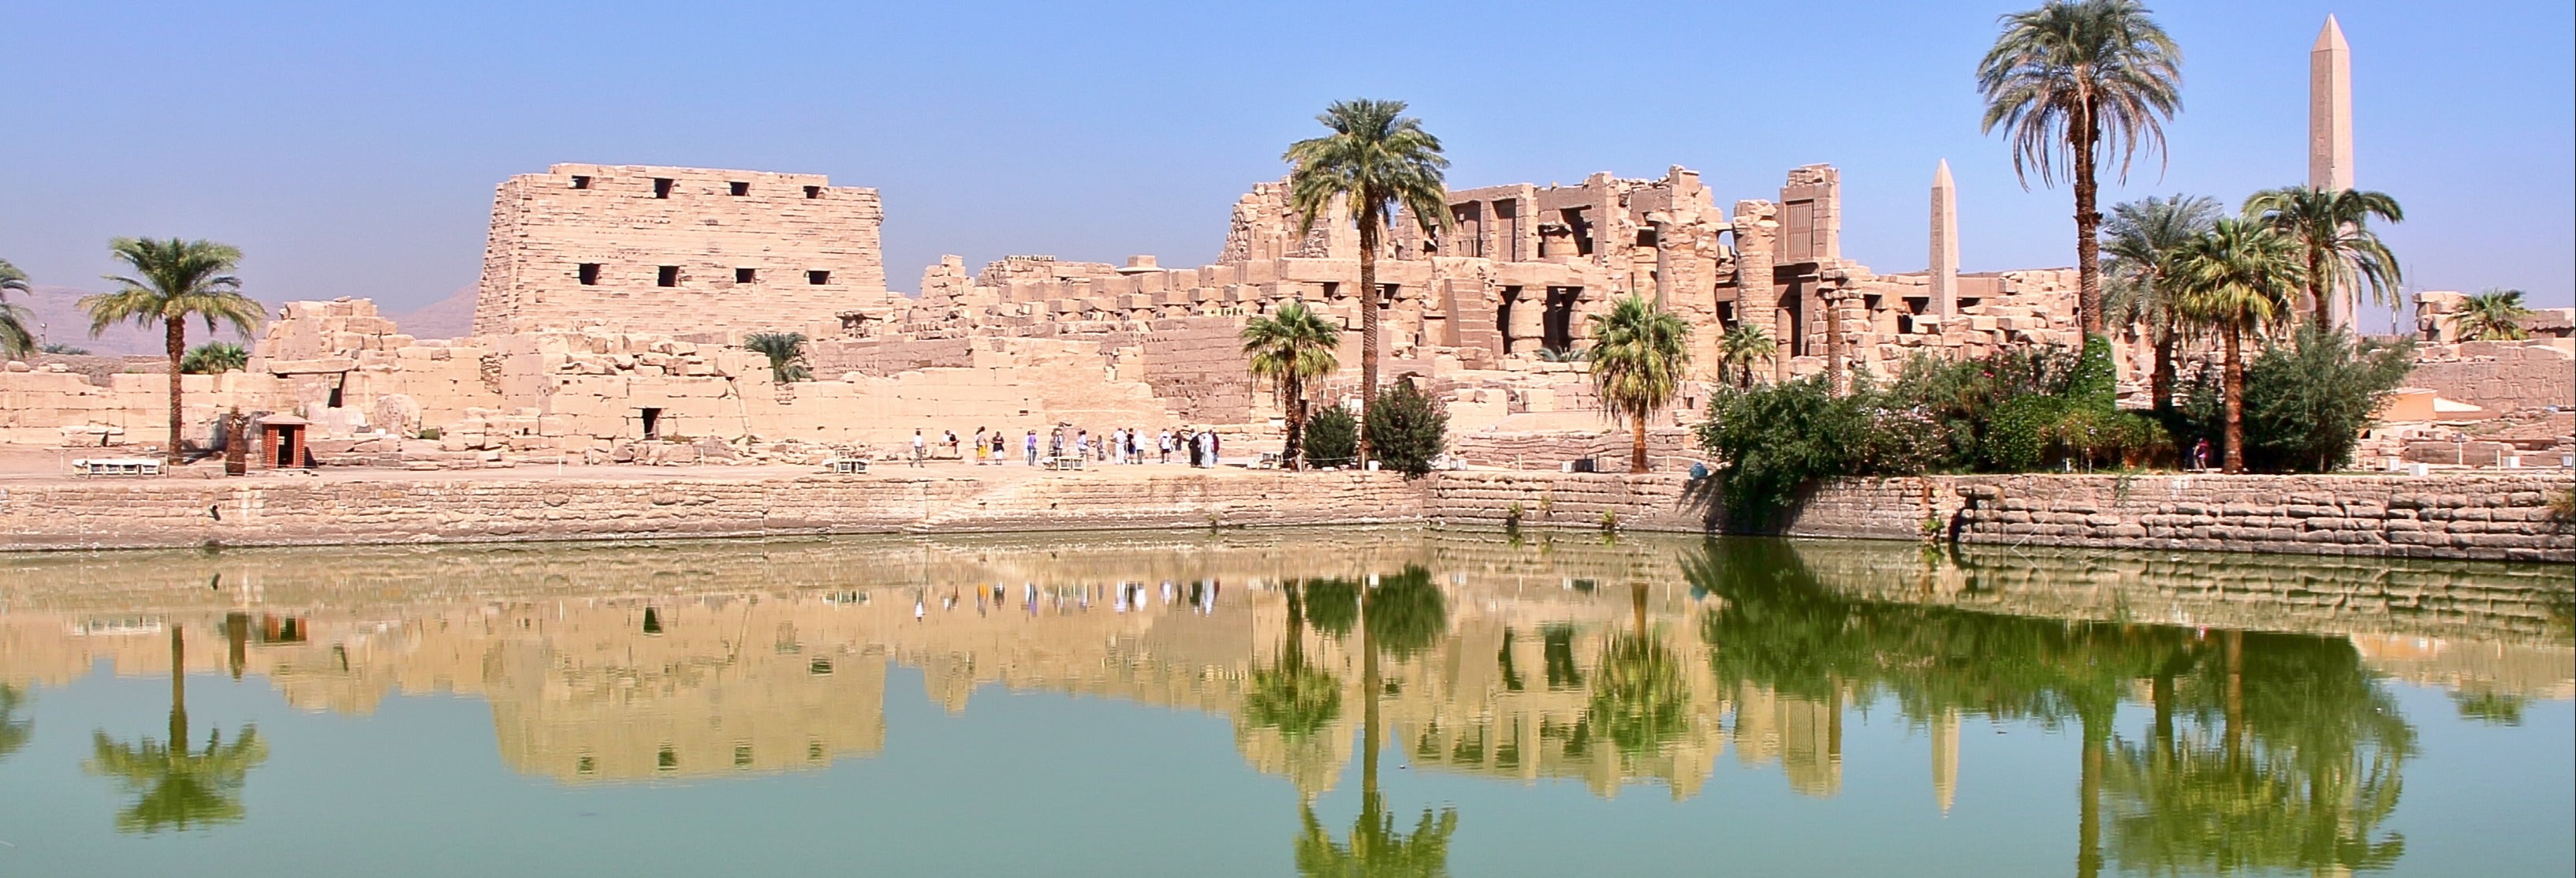 Visita guiada al Templo de Lúxor y al Templo de Karnak desde Lúxor